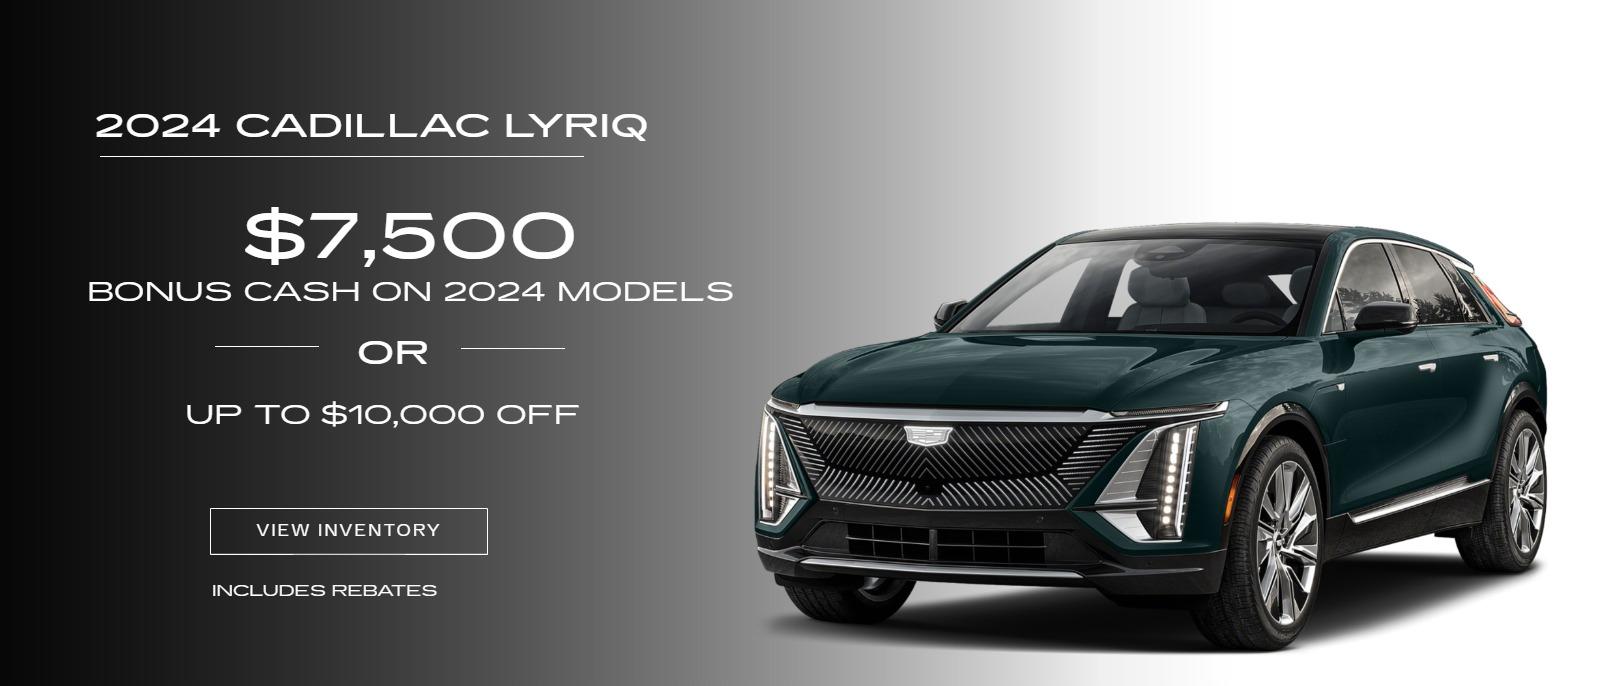 Lyriq - $7500 bonus cash on 2024 Models or up to $10,000 off
(Disclaimer includes rebates)